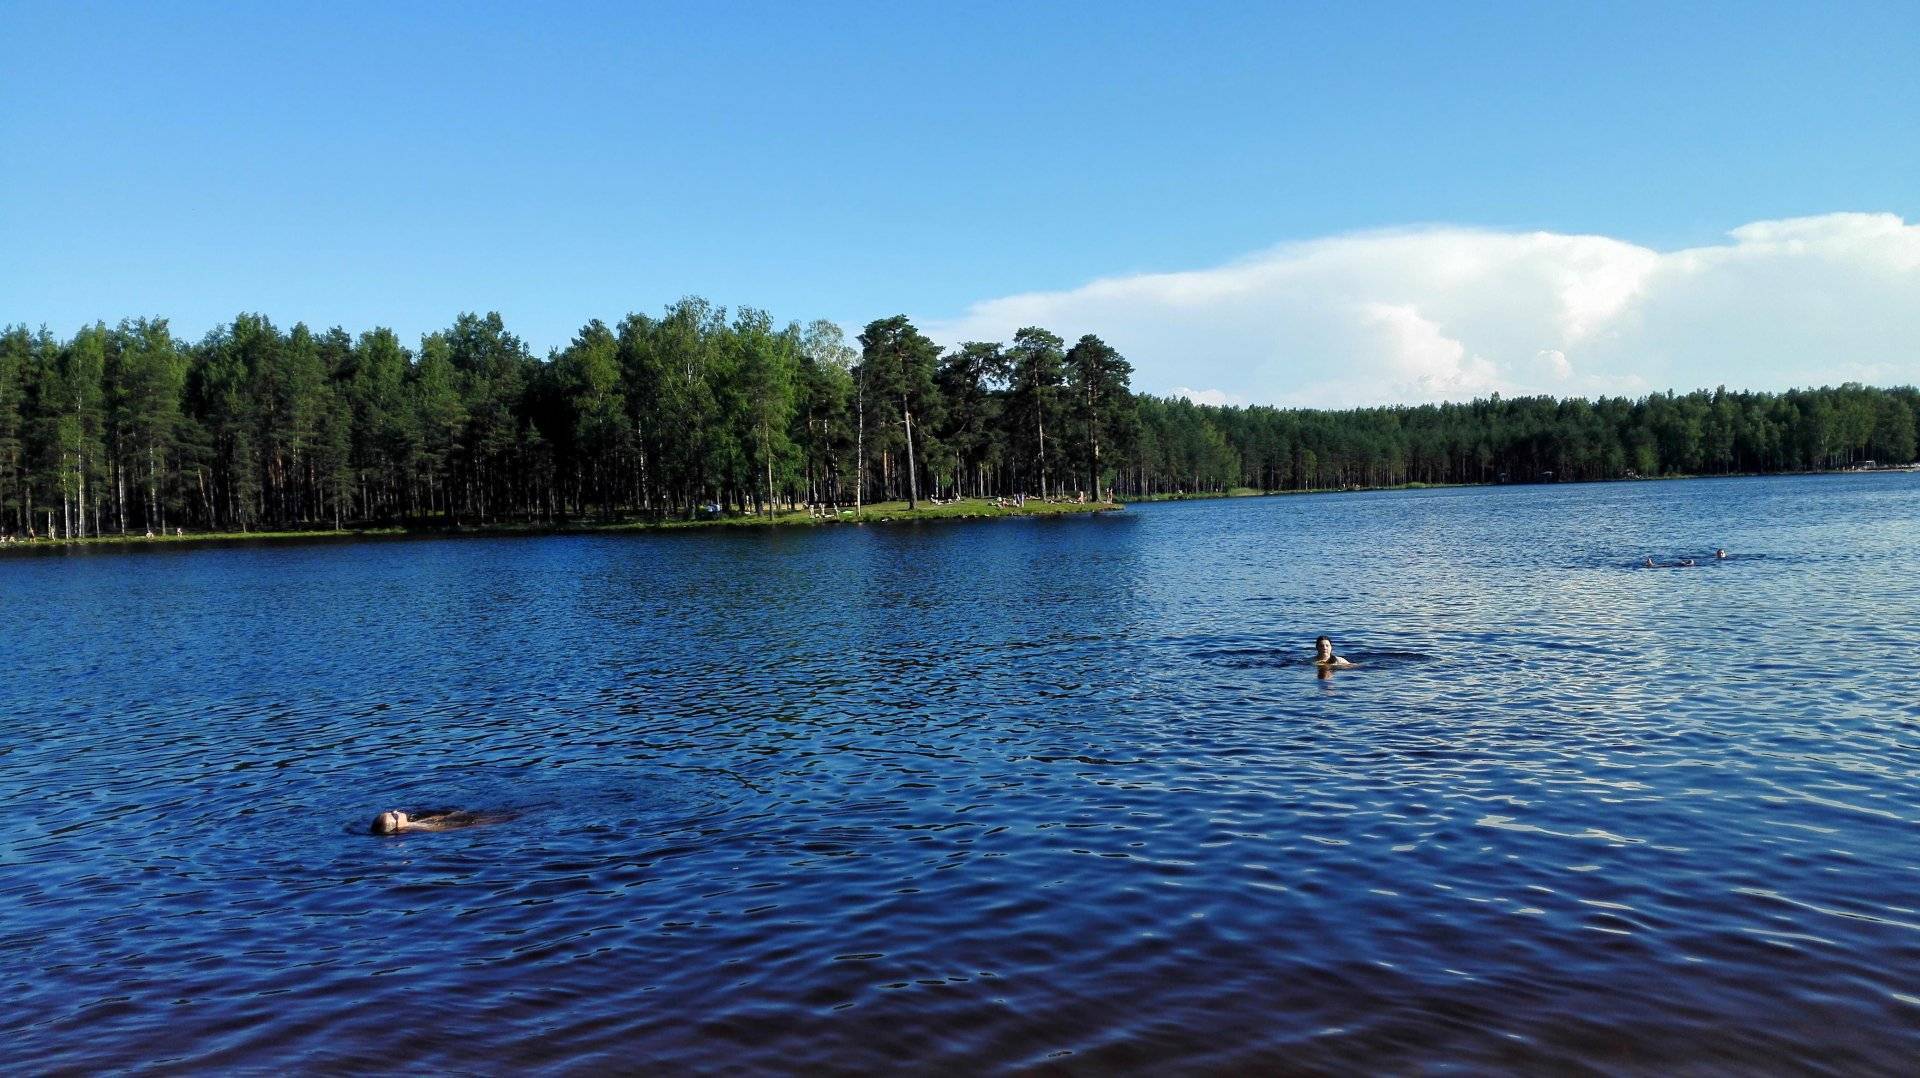 Озеро долгое (длинное), ленинградская область. рыбалка, базы отдыха, фото, видео, как добраться — туристер.ру